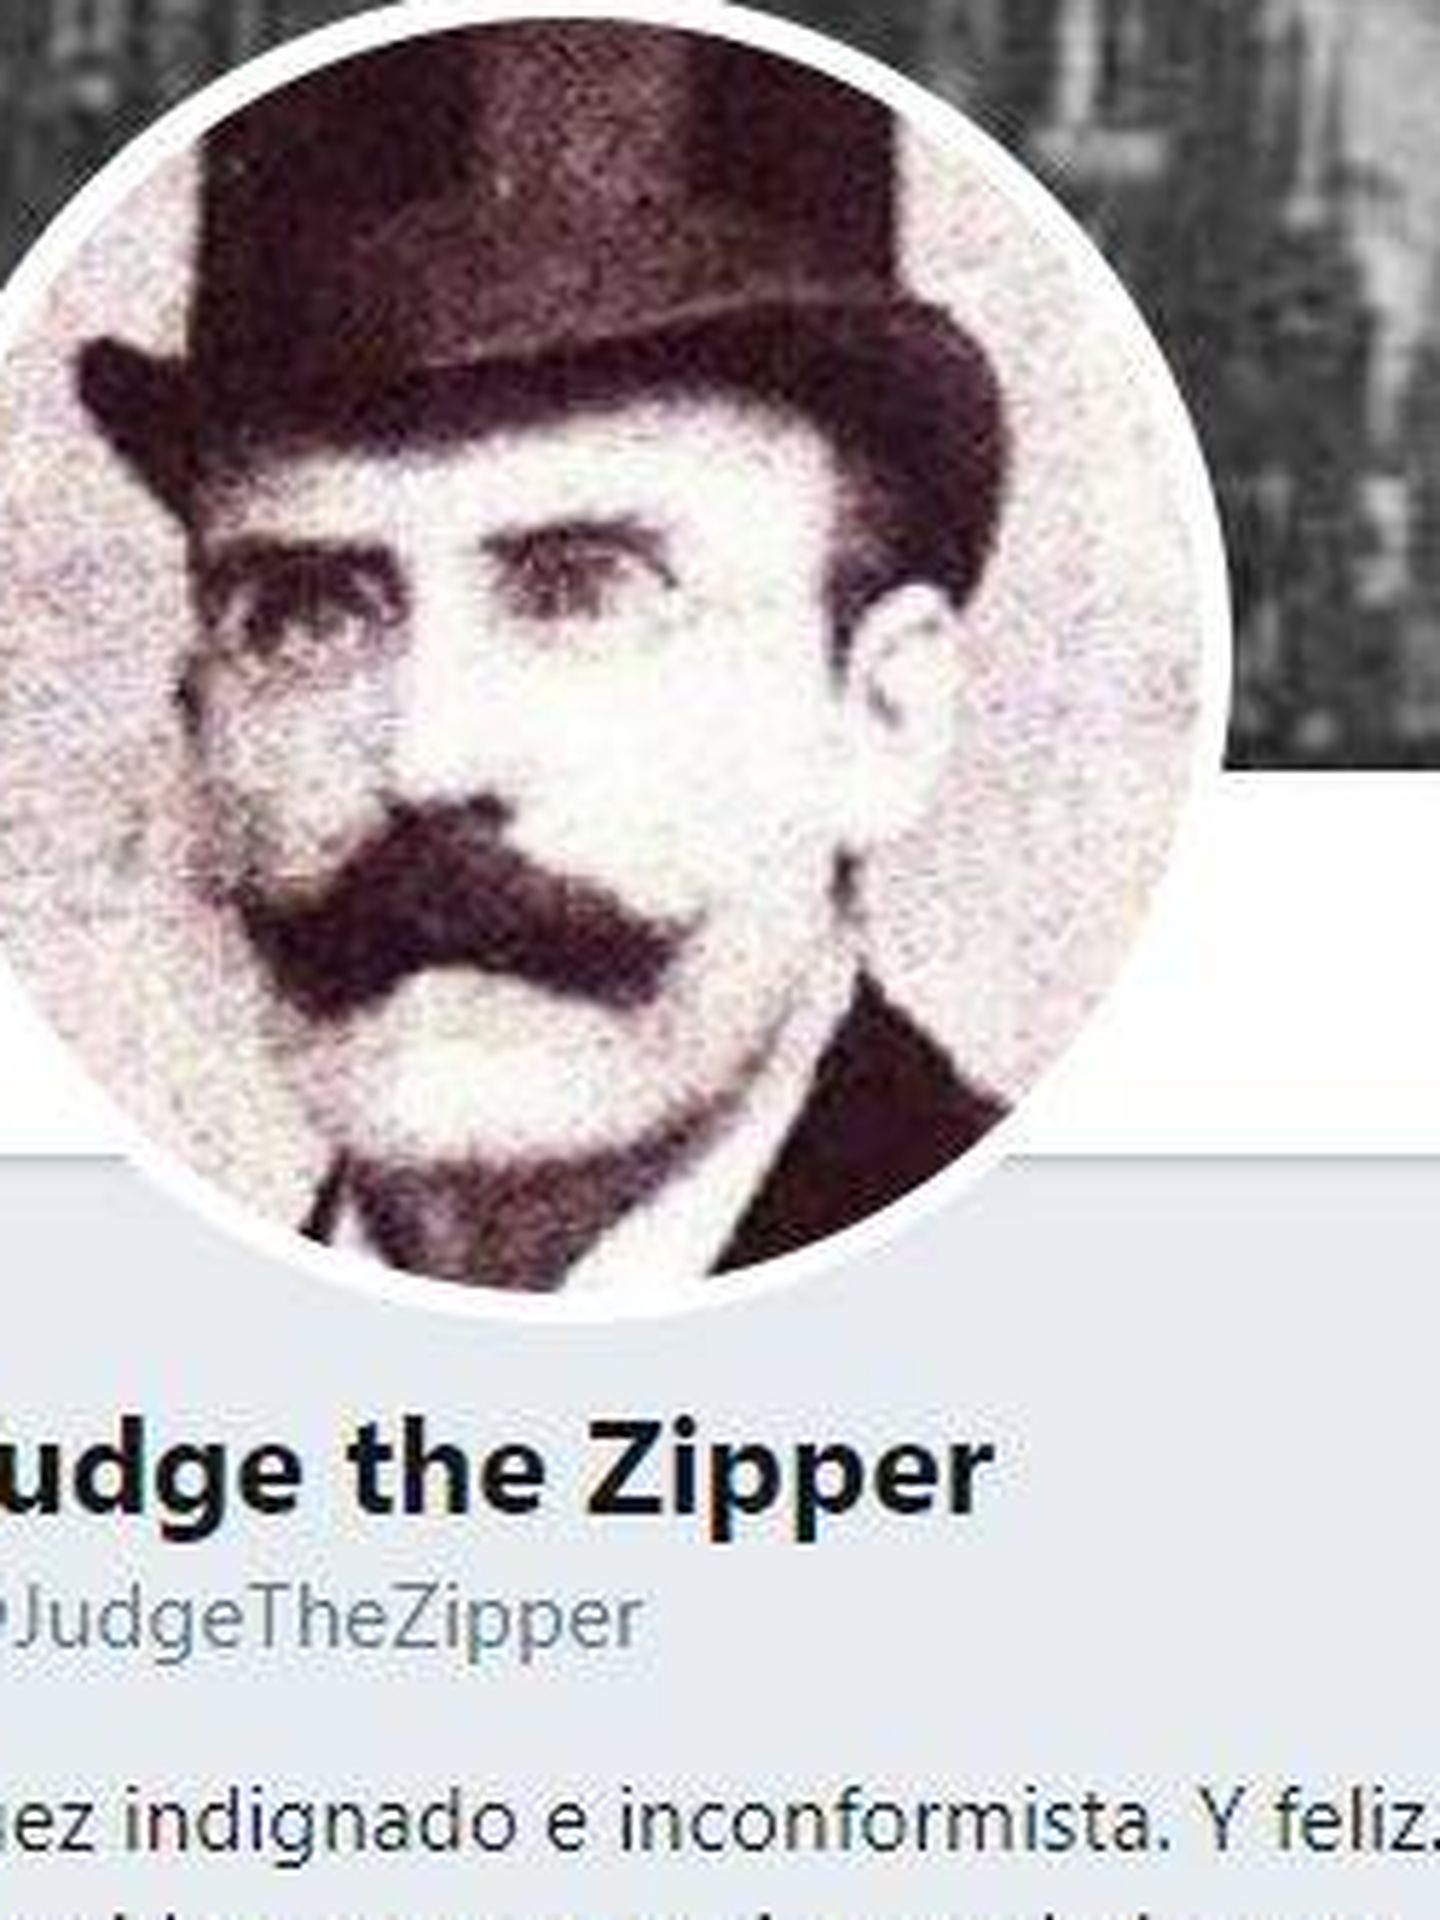 Perfil de Judge the Zipper.